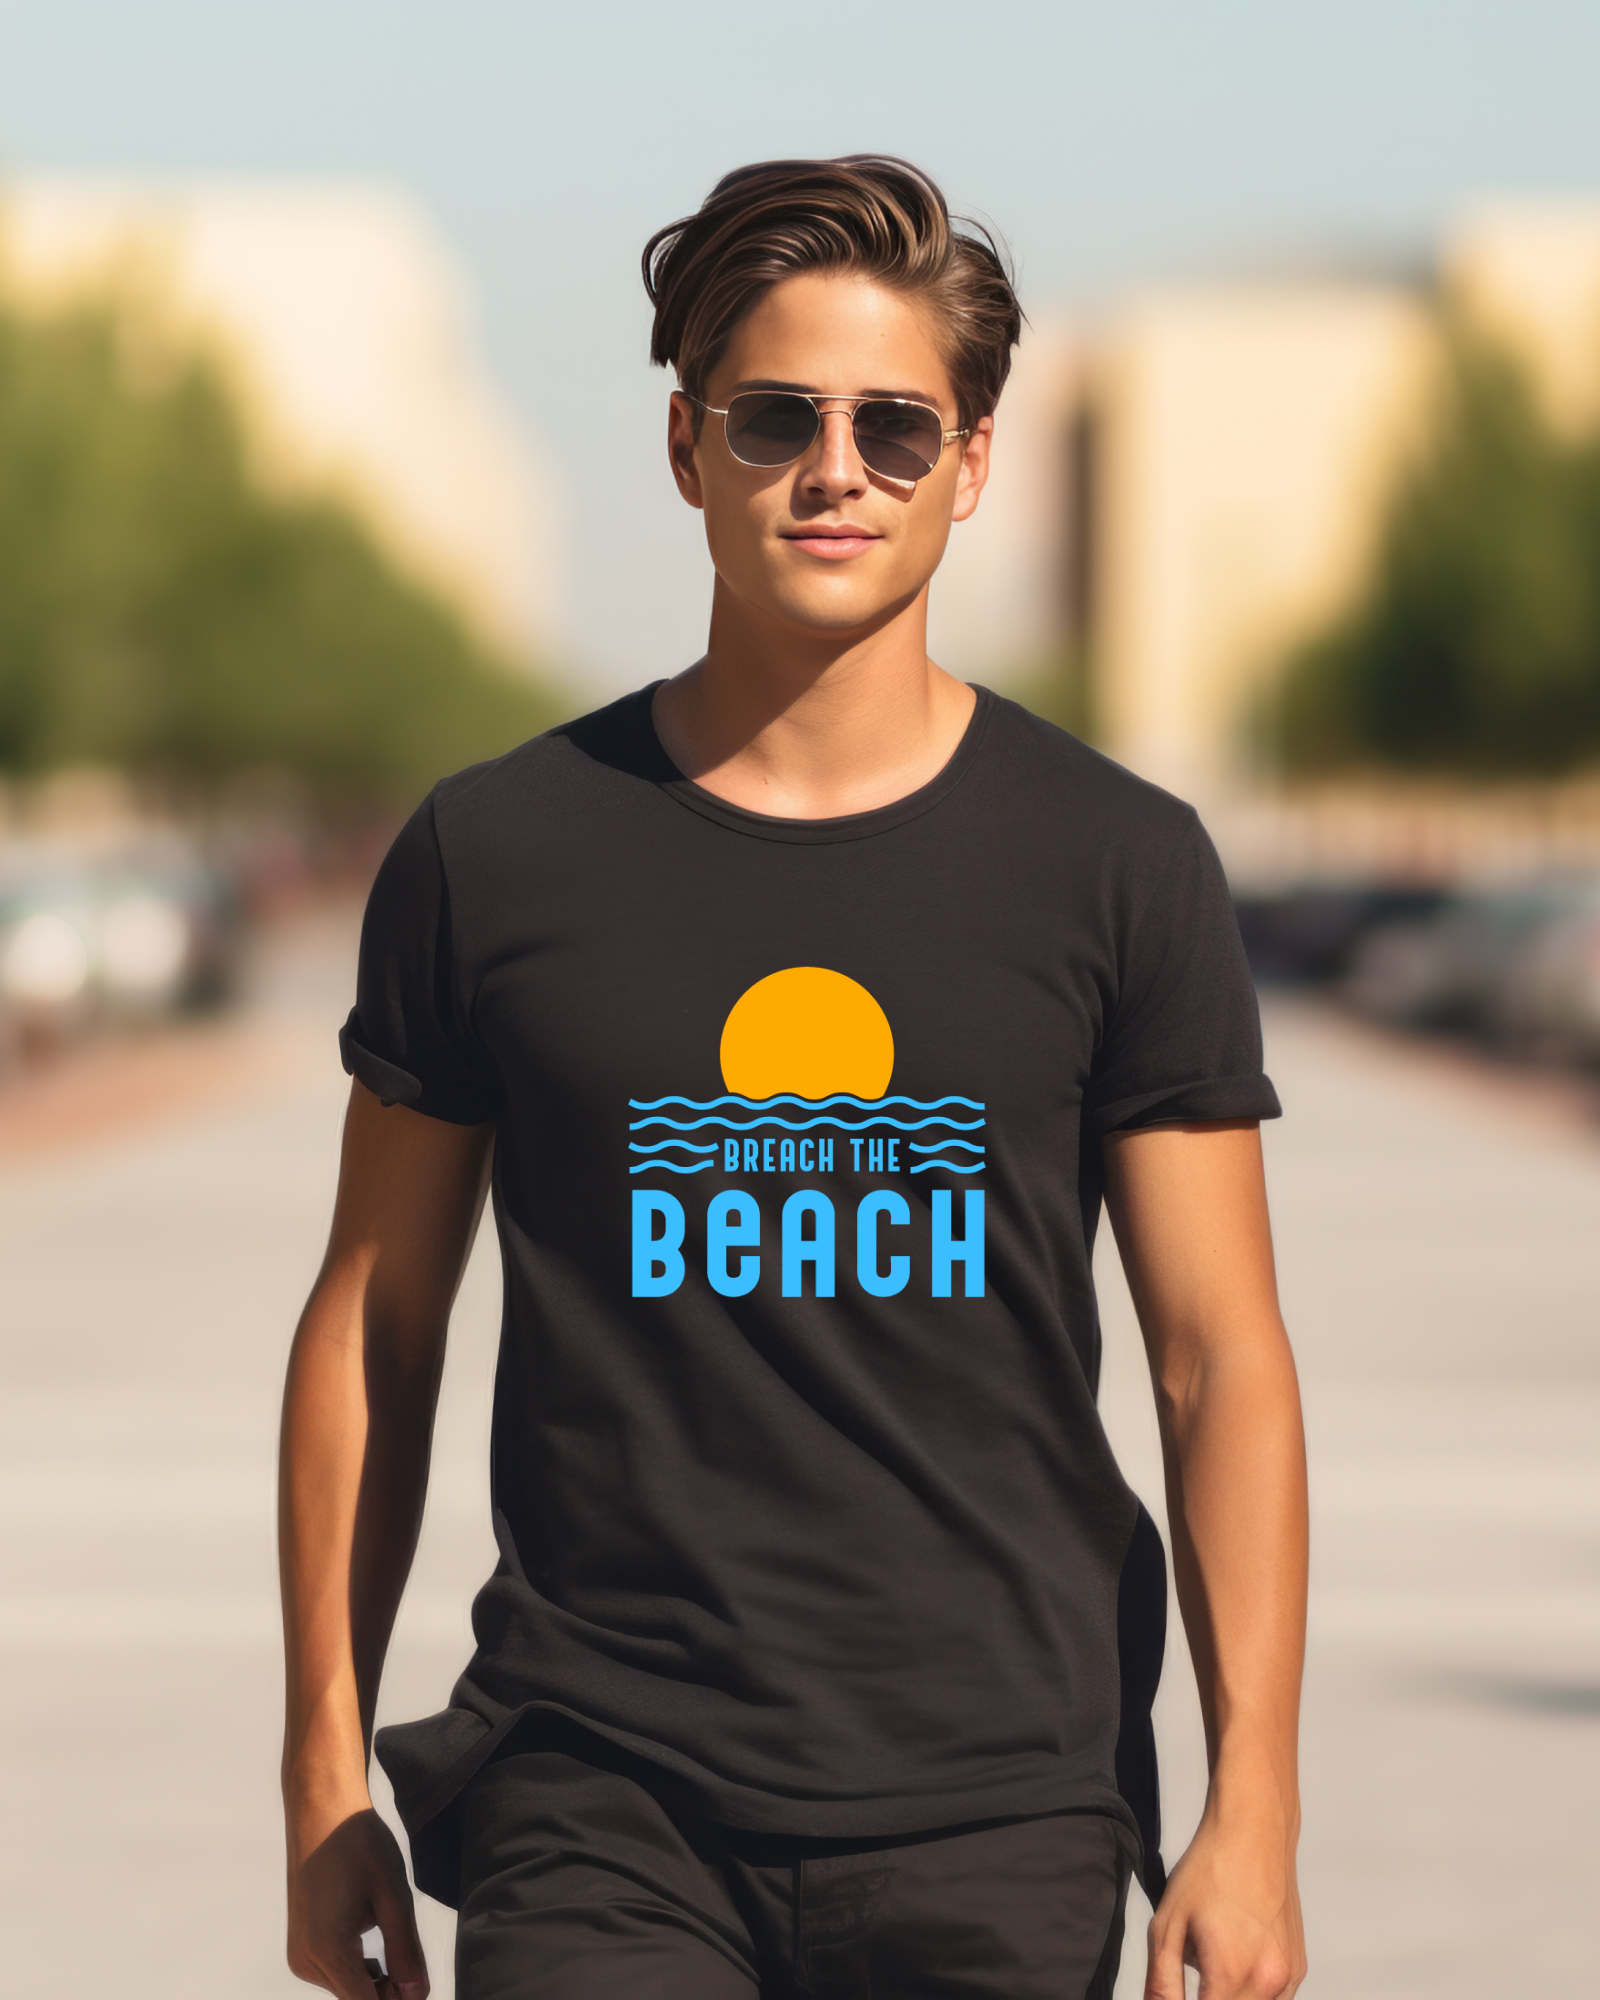 Breach The Beach T-Shirt